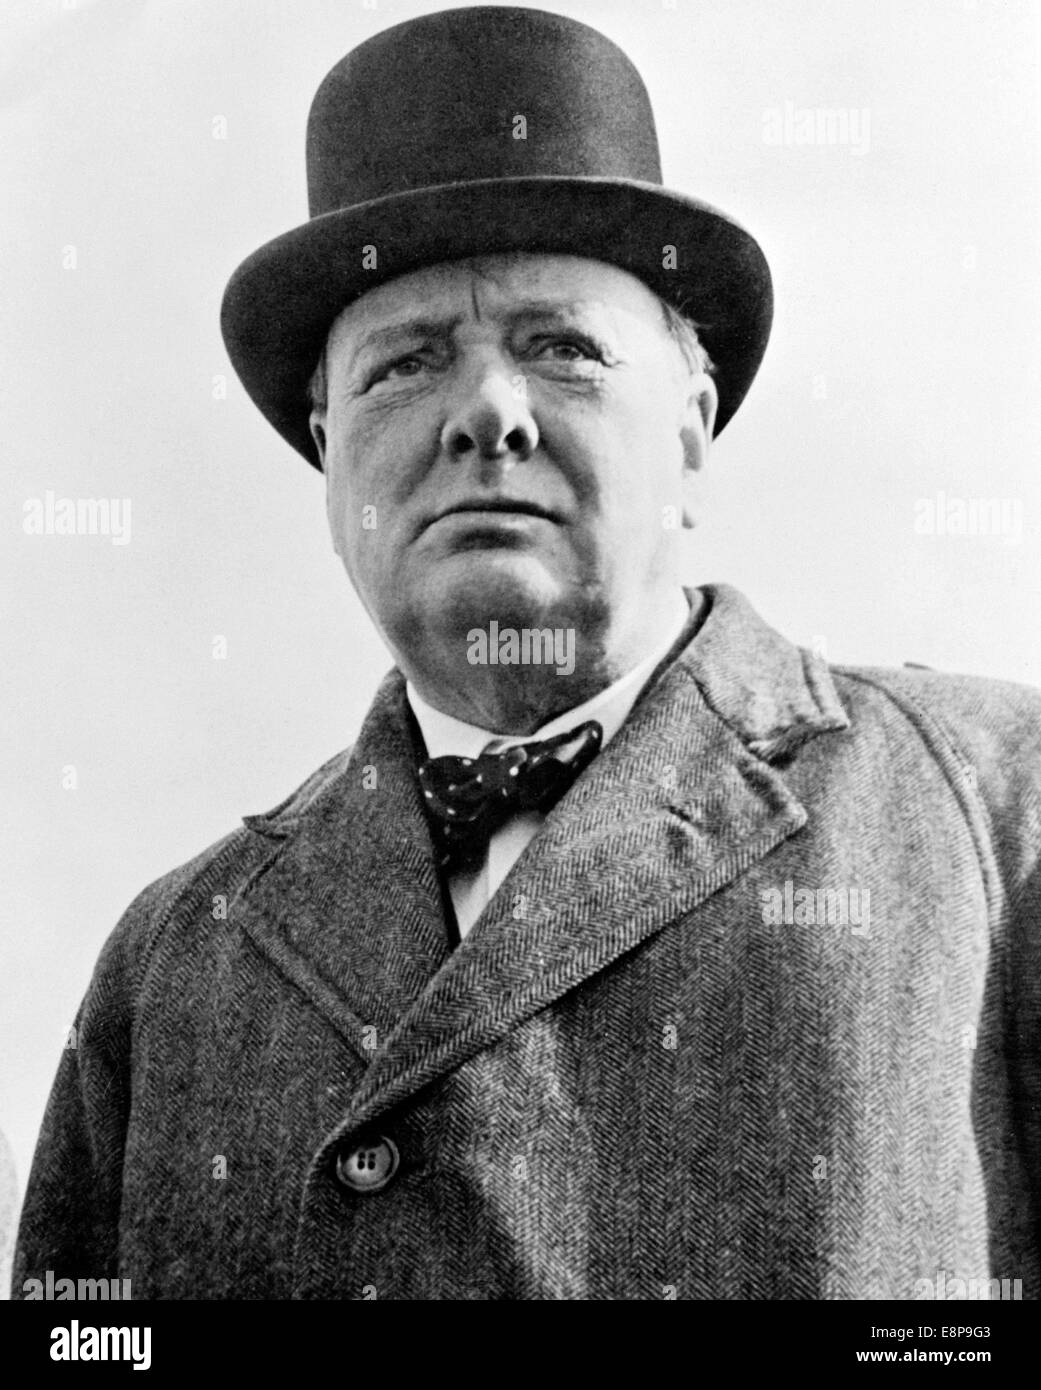 WINSTON CHURCHILL (1874-1965) britischer konservativer Politiker Wahlkampf bei den Parlamentswahlen 1945 Stockfoto